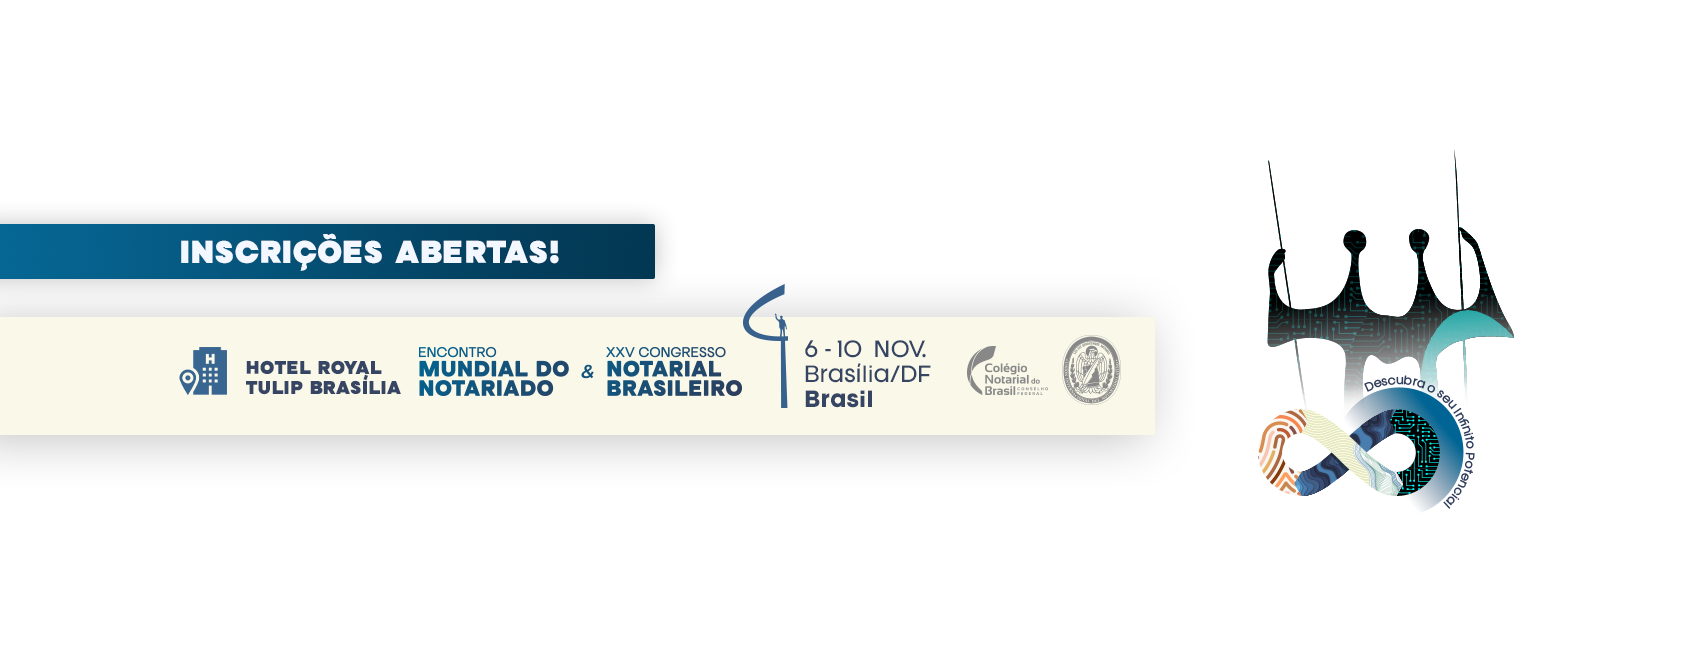 Inscrições Abertas Para O Encontro Mundial Do Notariado E Do Congresso Notarial Brasileiro